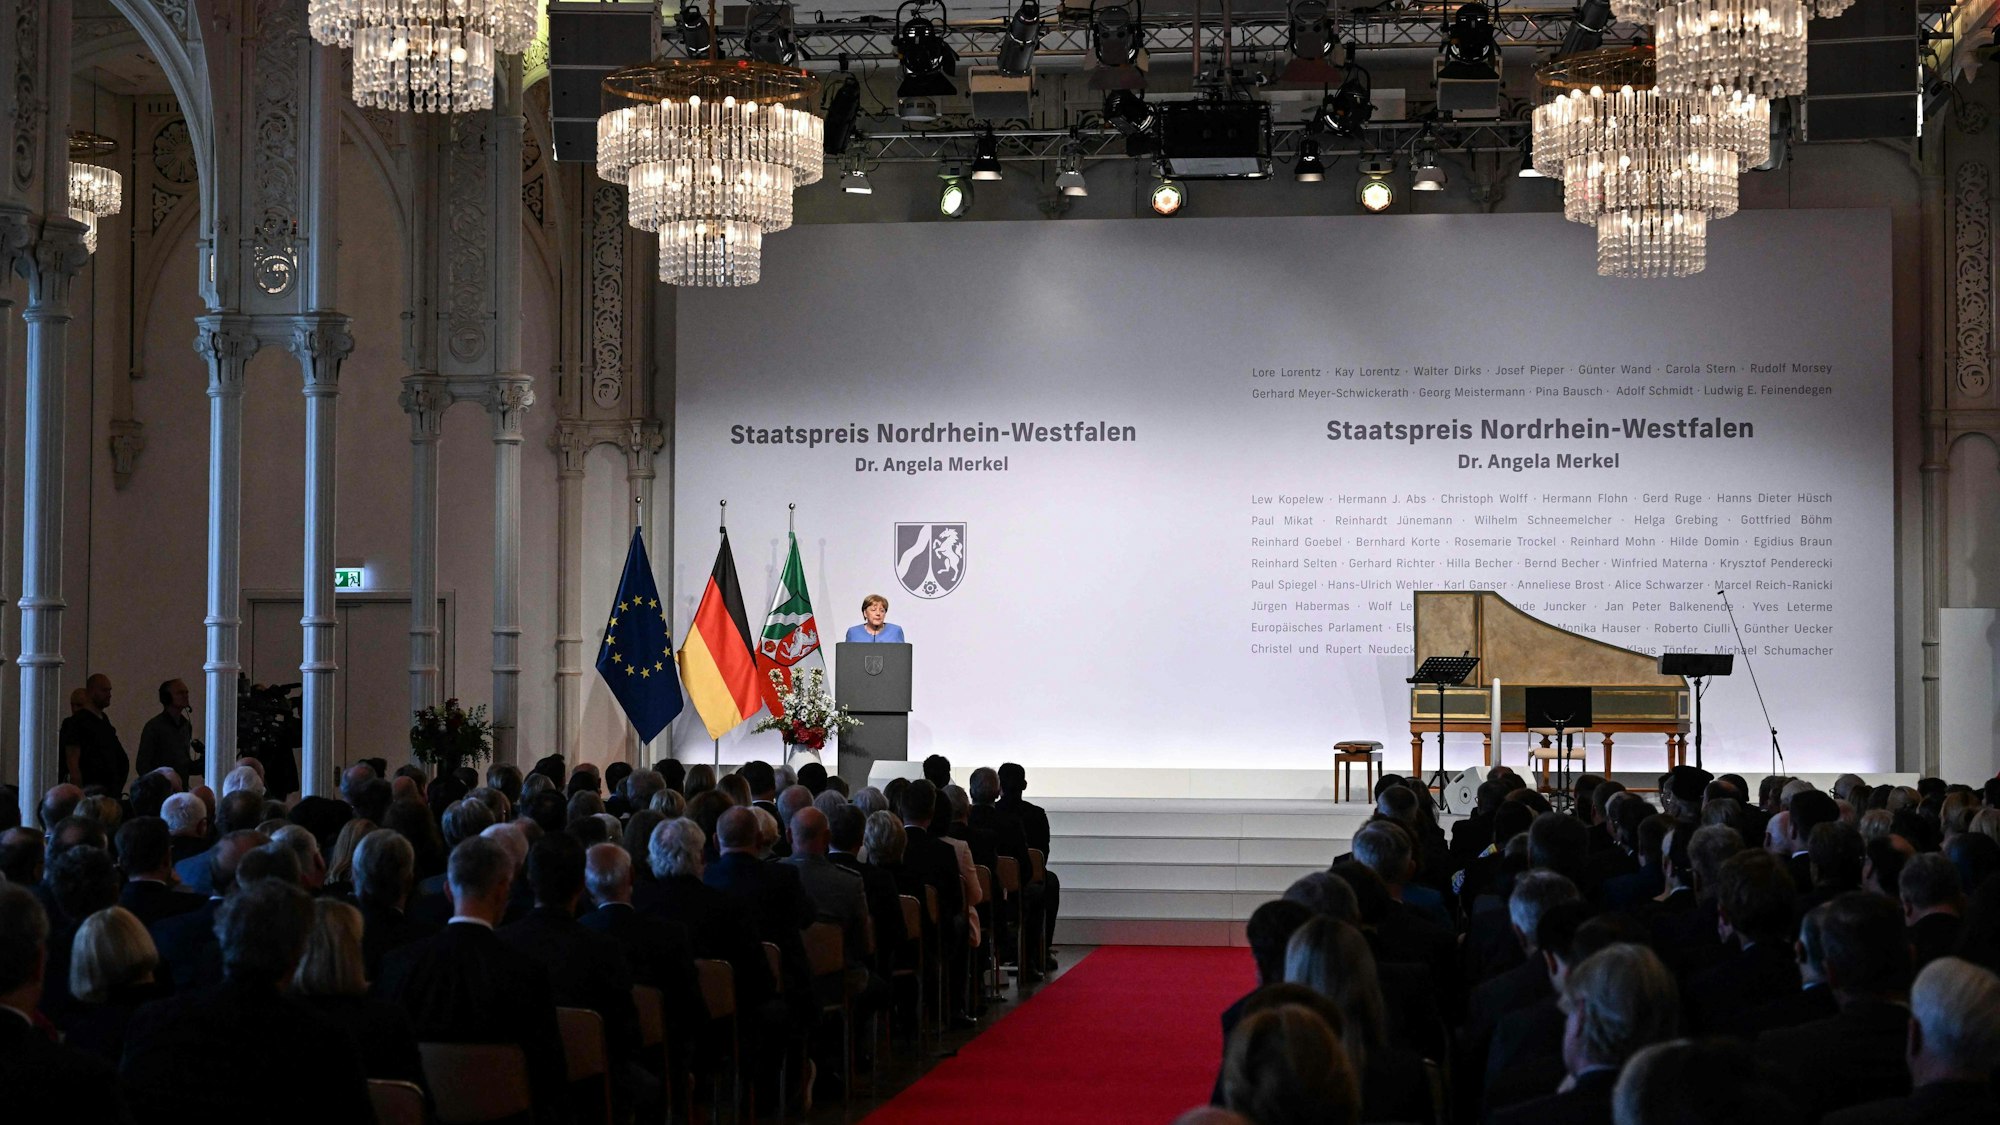 Angela Merkel spricht auf der Bühne in der Kölner Flora. Sie ist von weit hinten im Saal fotografiert, man sieht Publikum und einen Flügel neben ihr auf der Bühne. Ebenso die Flaggen von Europa, Deutschland und NRW.